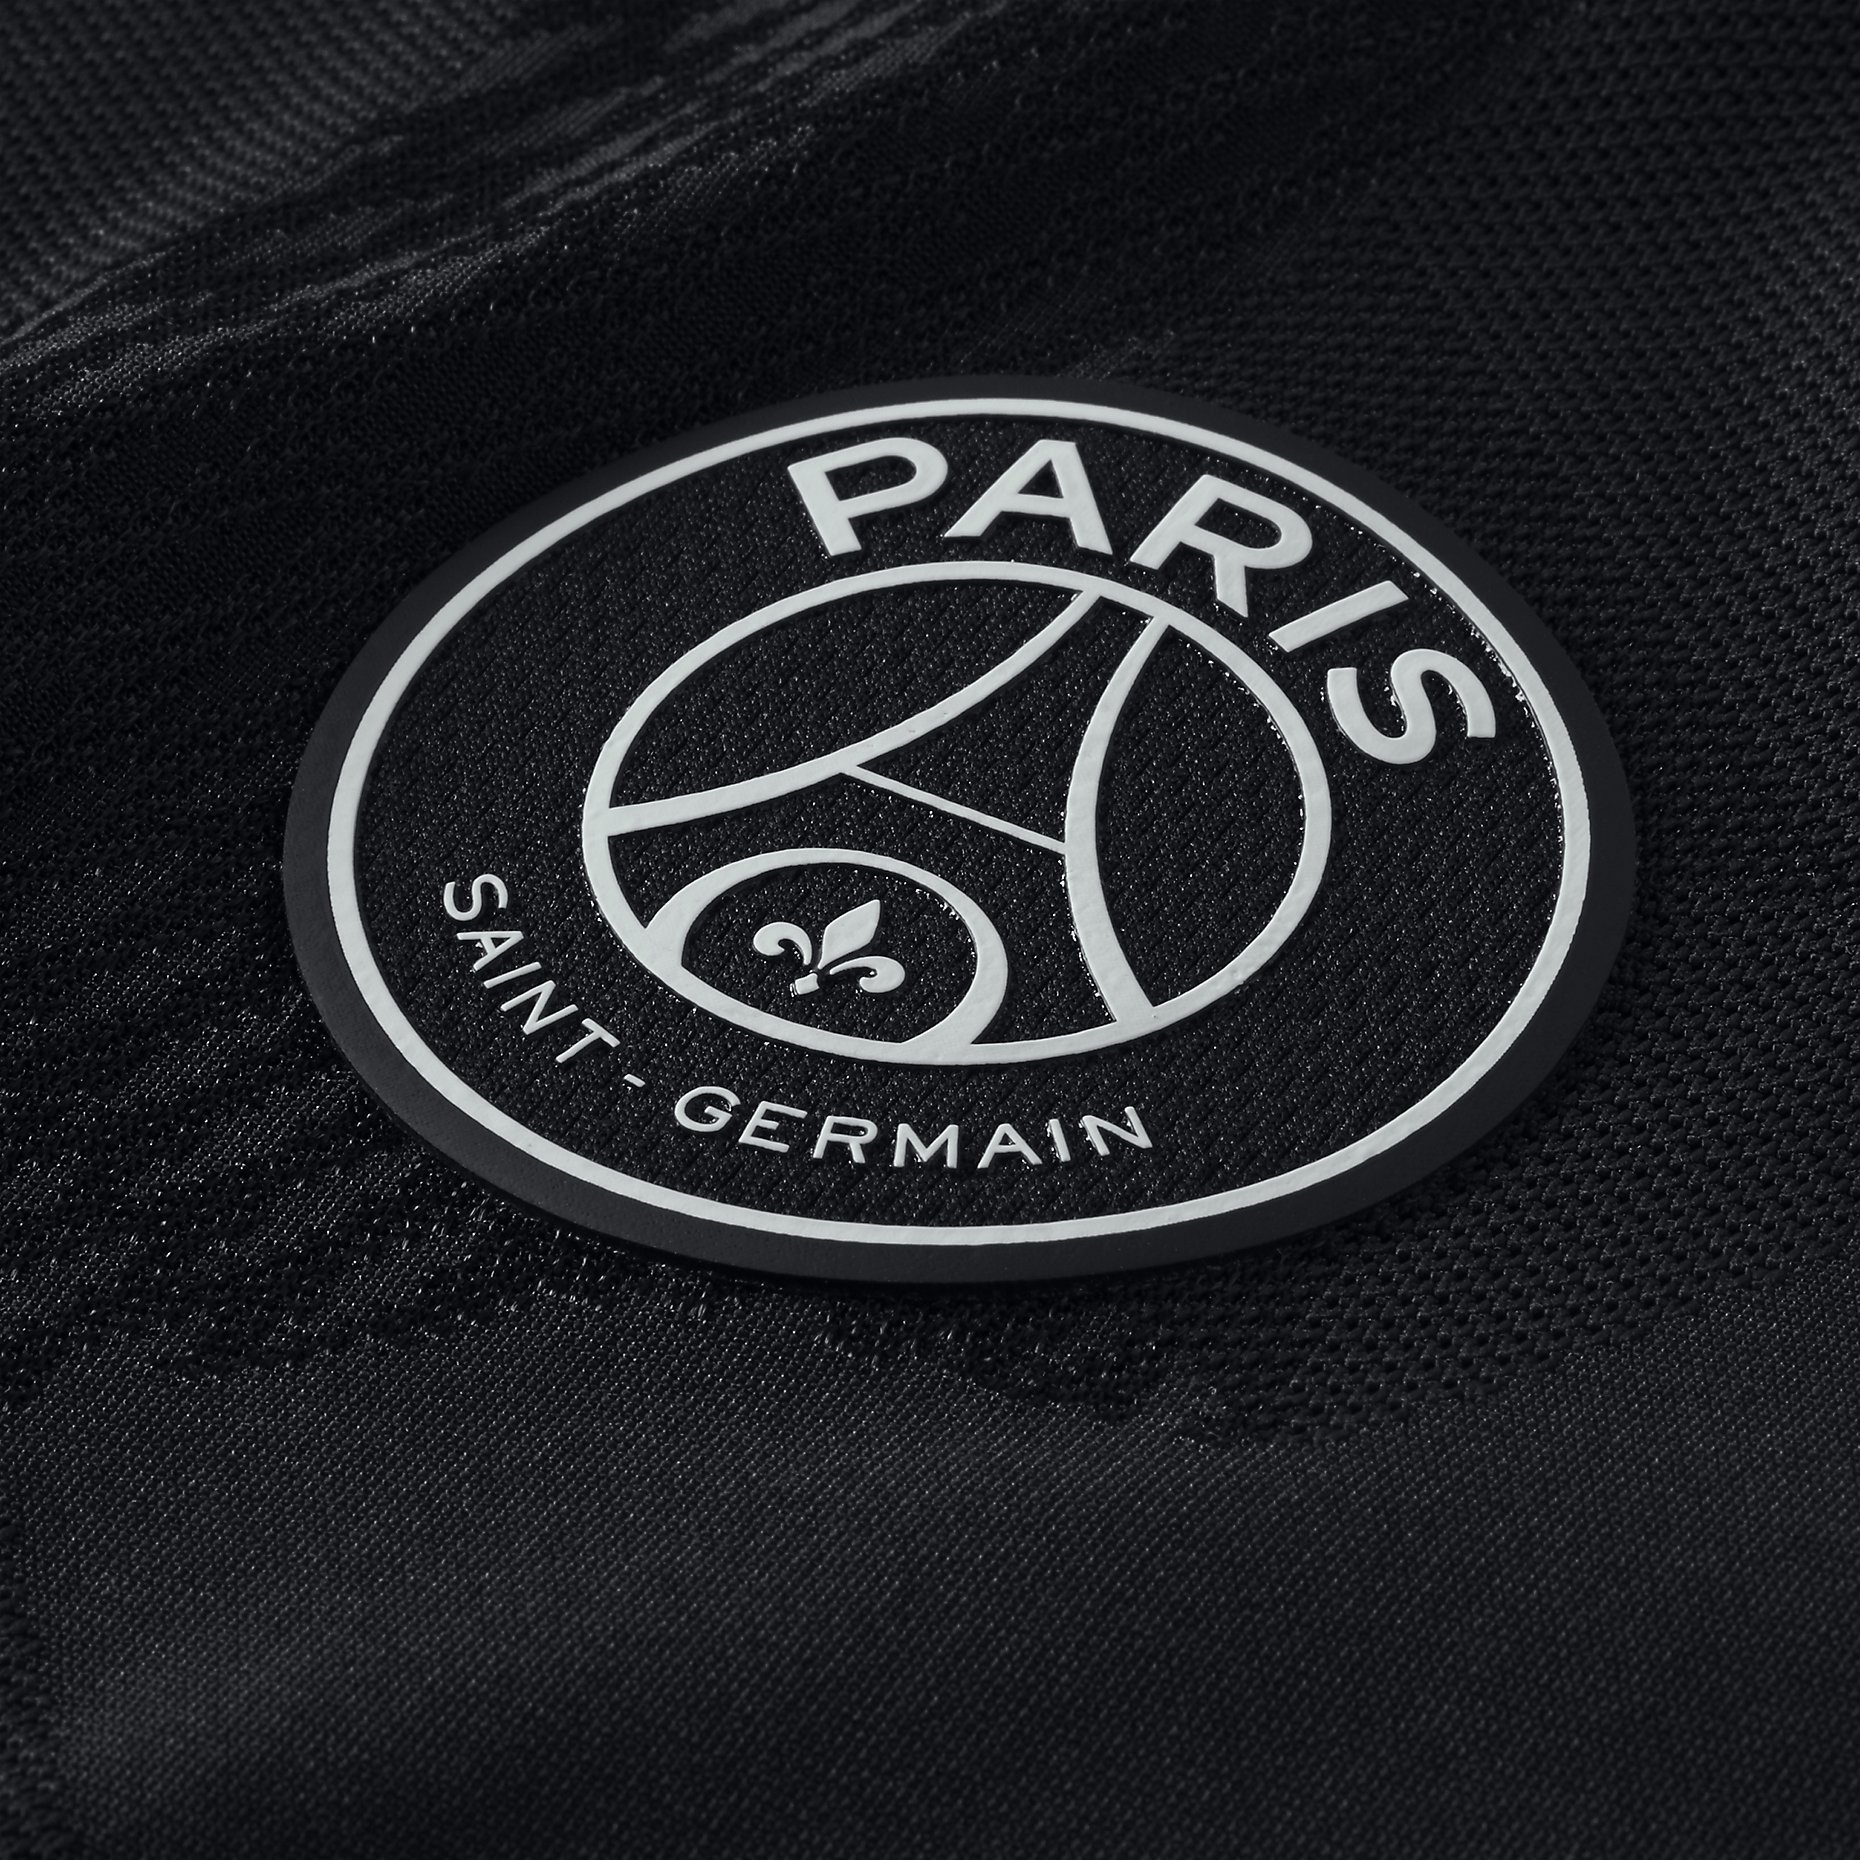 Paris Saint-Germain 17/18 Nike Third Kit | 17/18 Kits | Football shirt blog